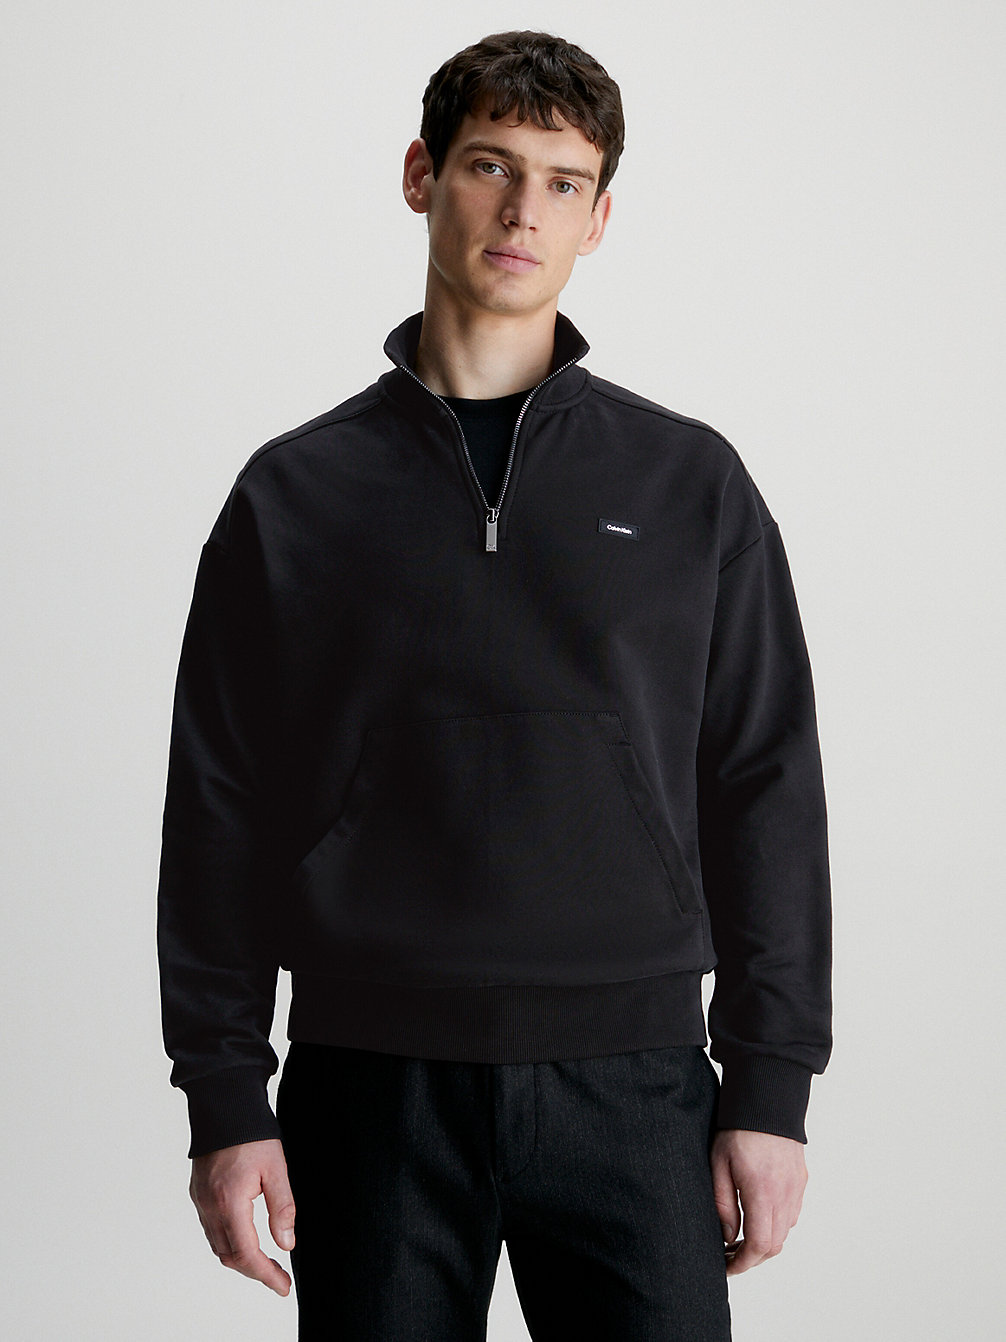 CK BLACK > Lässiges Sweatshirt Mit Reißverschlusskragen > undefined Herren - Calvin Klein